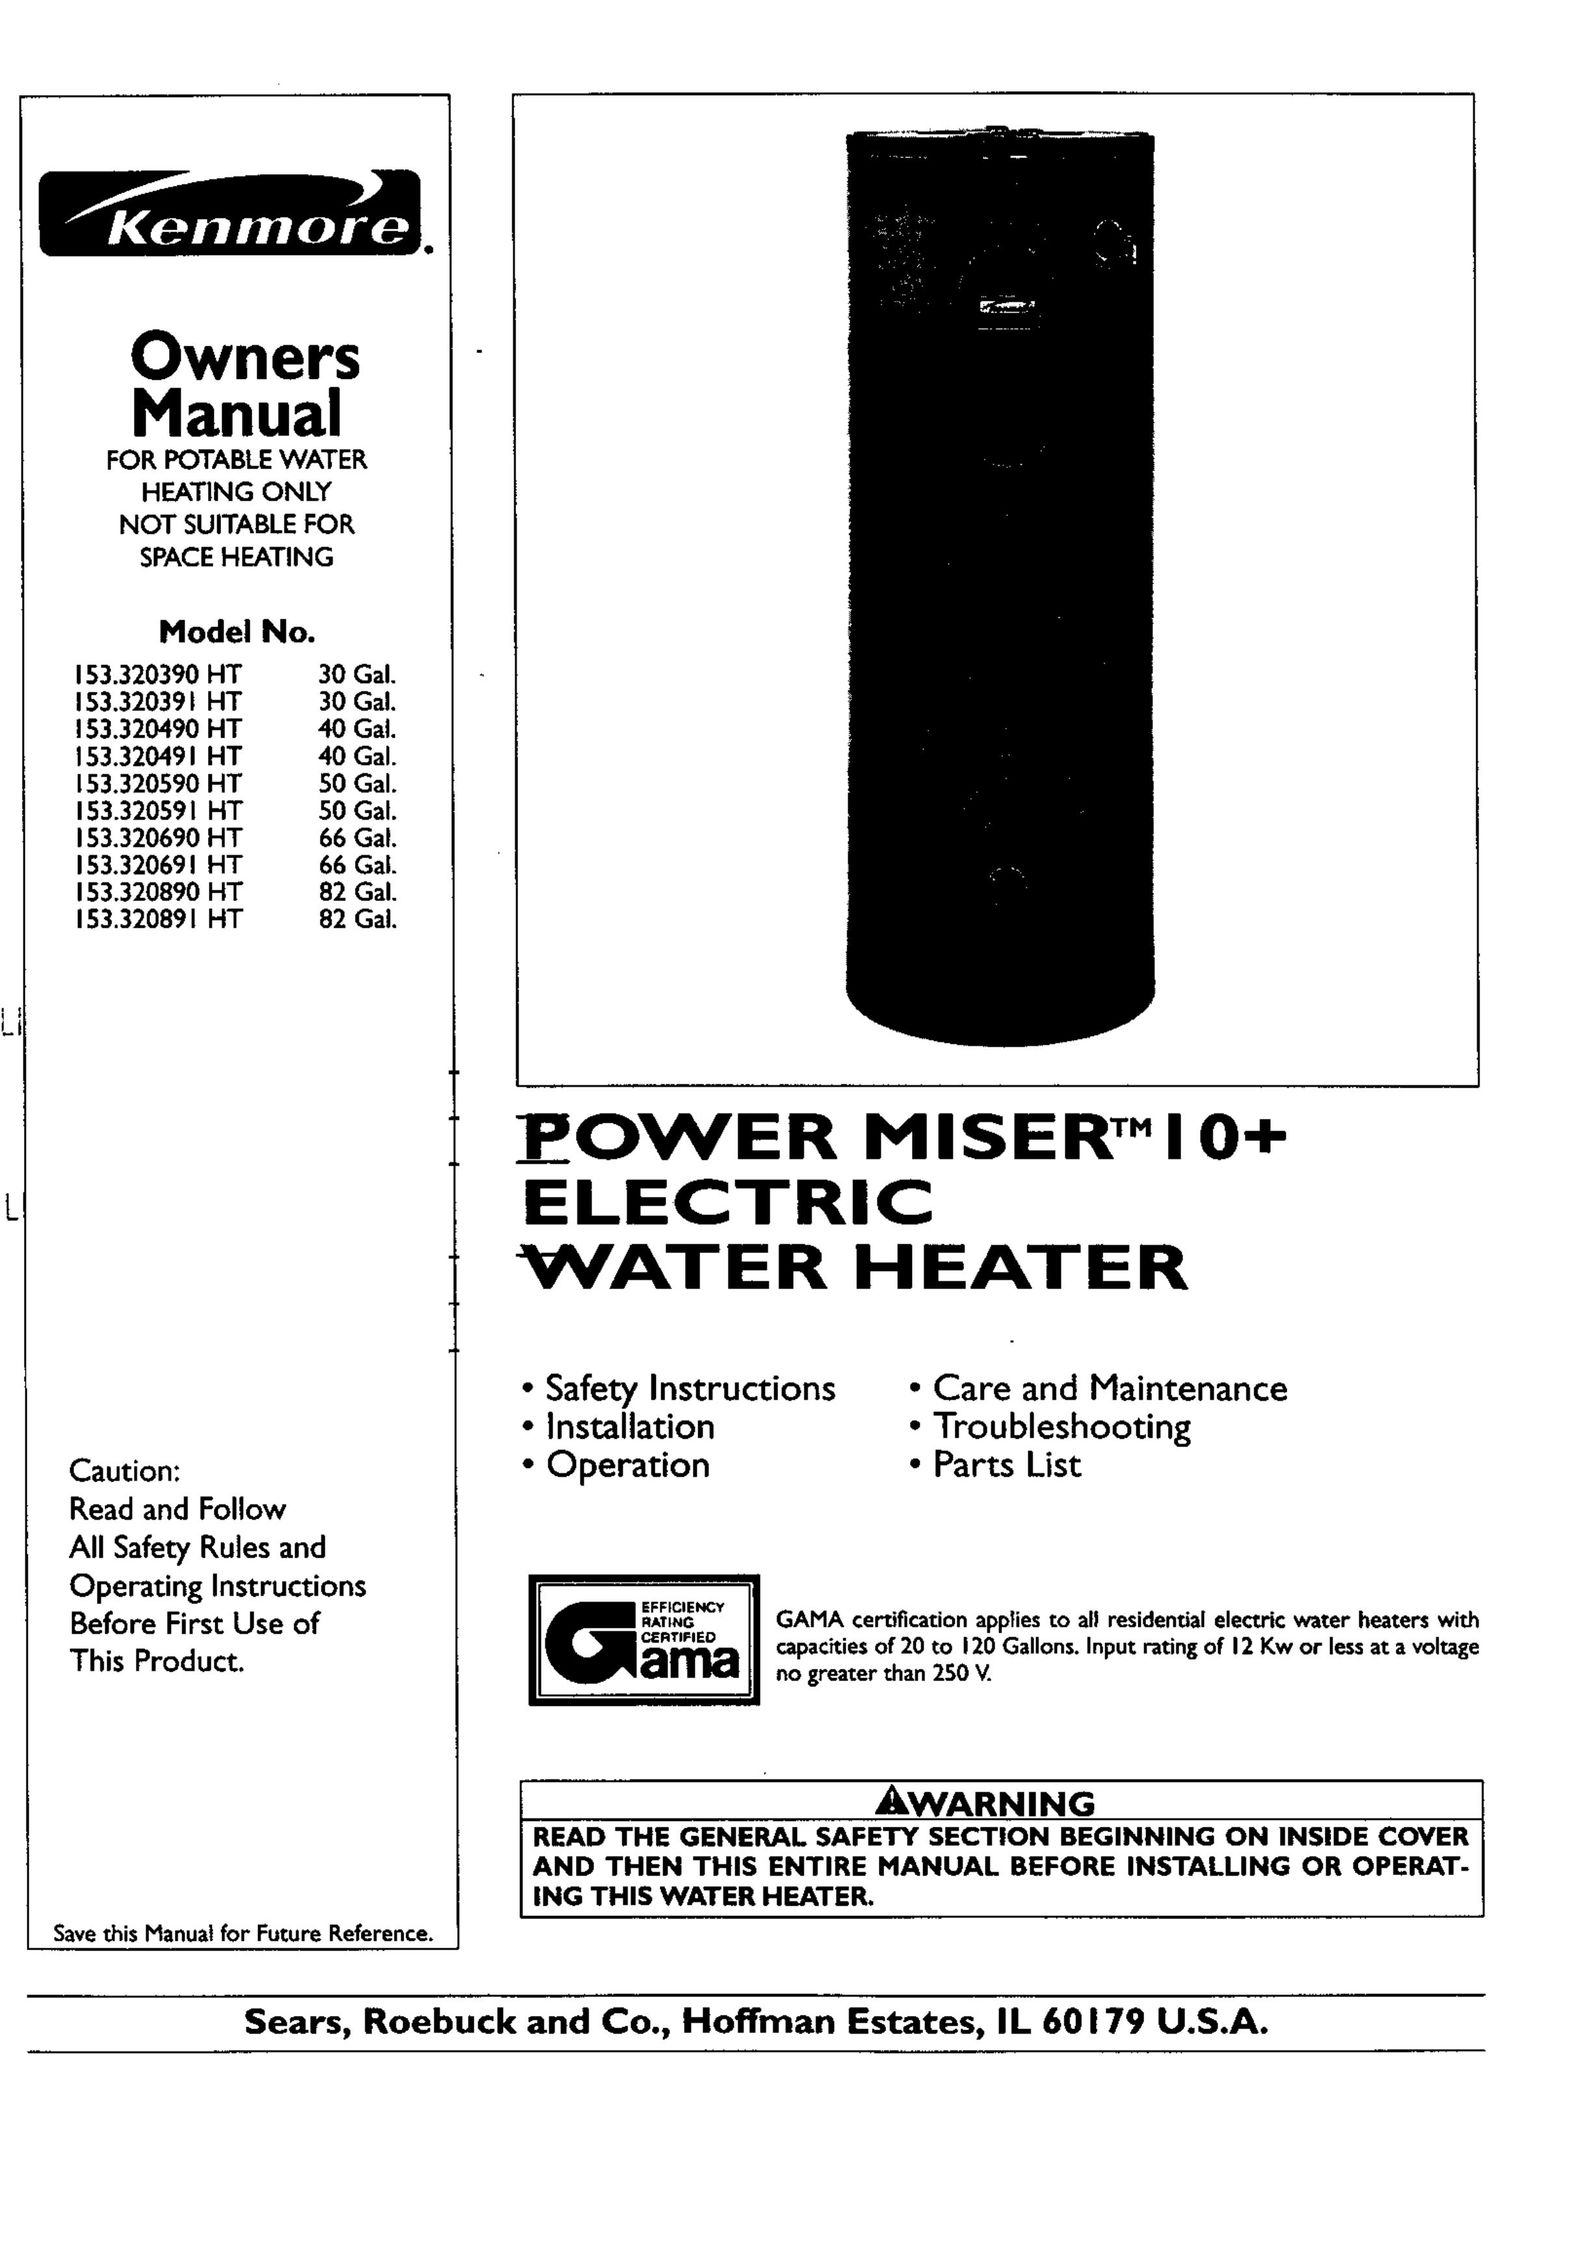 Kenmore 153.320691 HT 66 GAL Water Heater User Manual